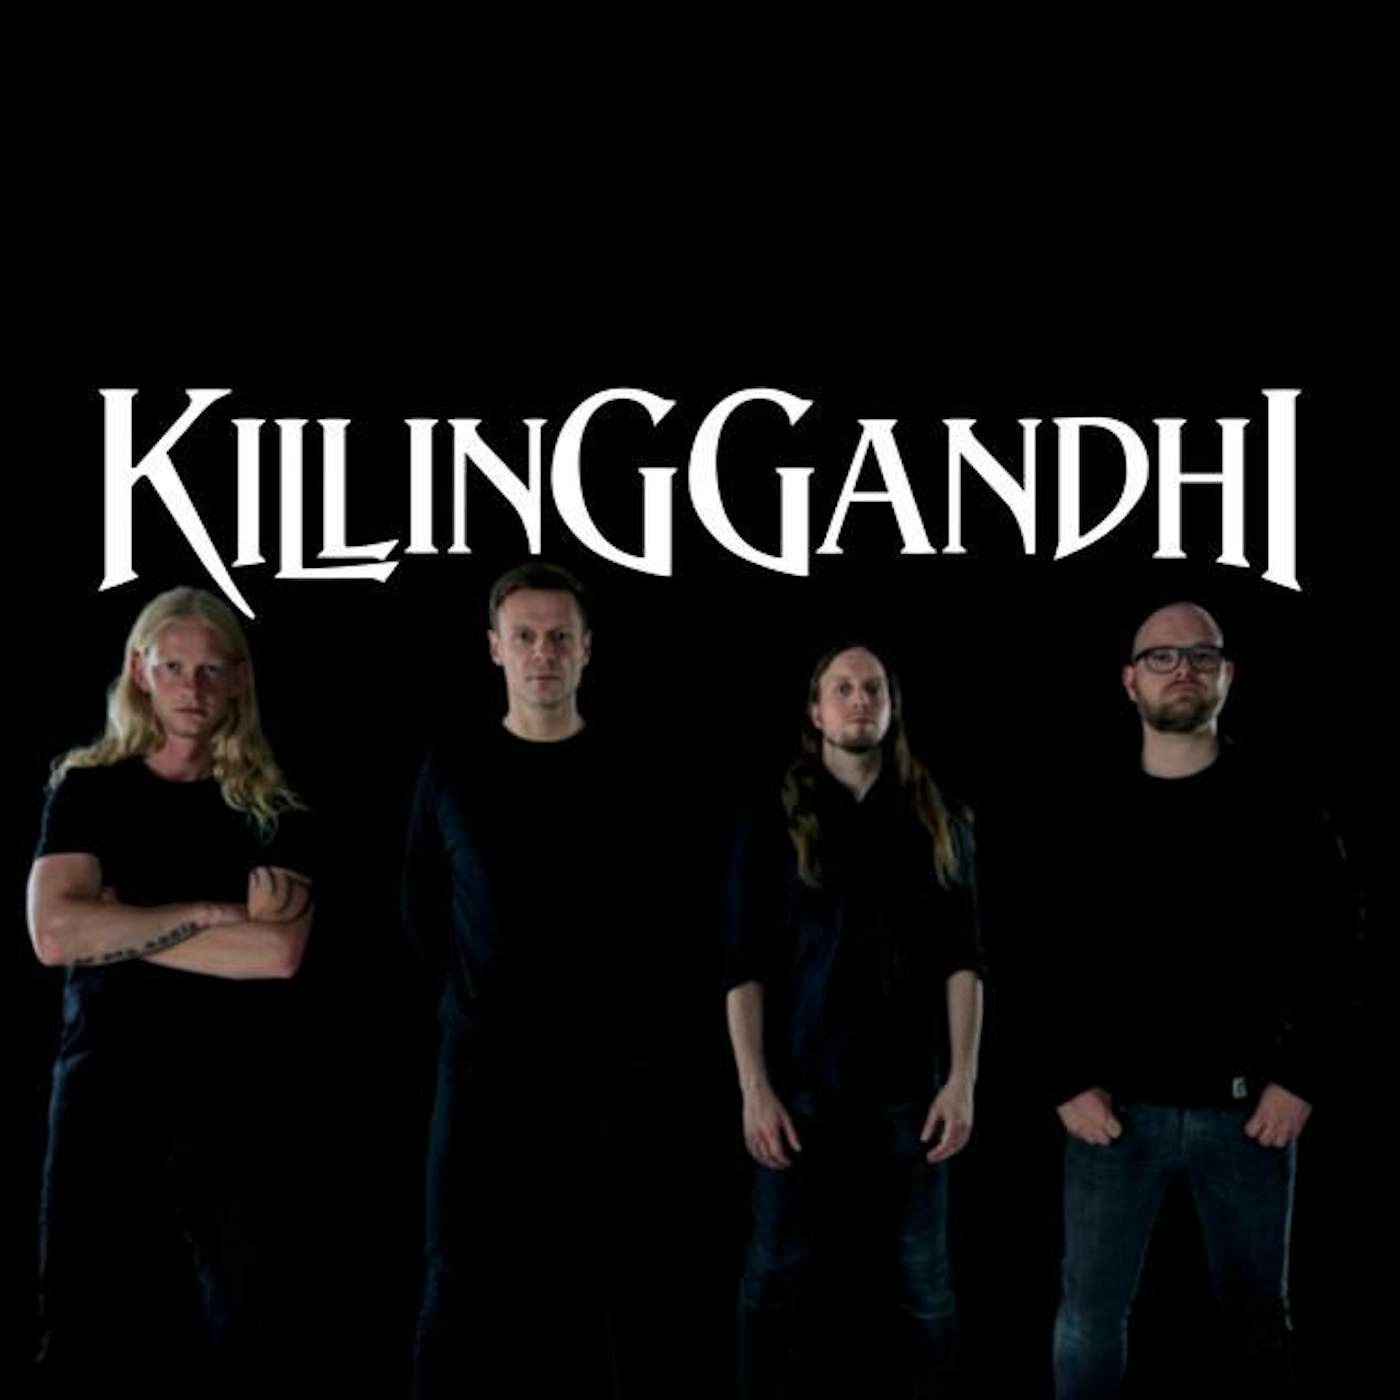 Killing Gandhi